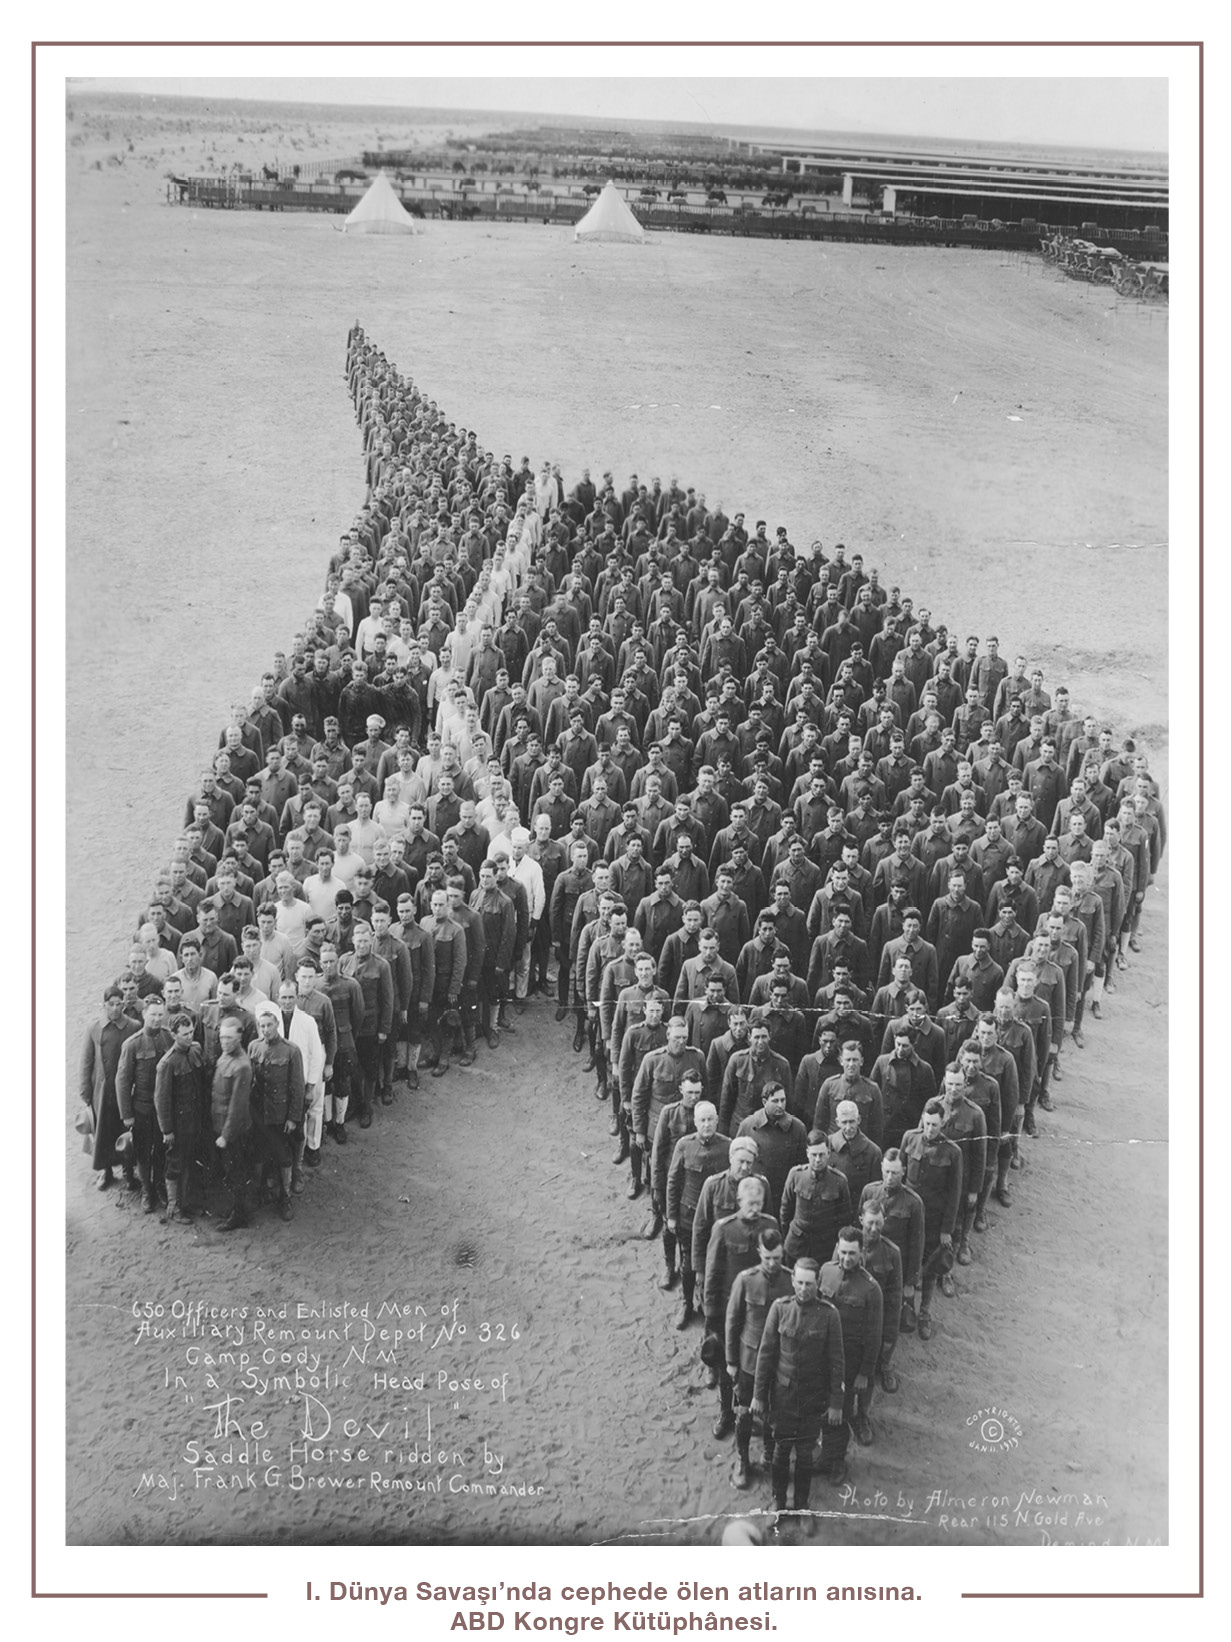 I. Dünya Savaşı’nda cephede ölen atların anısına. ABD Kongre Kütüphânesi.